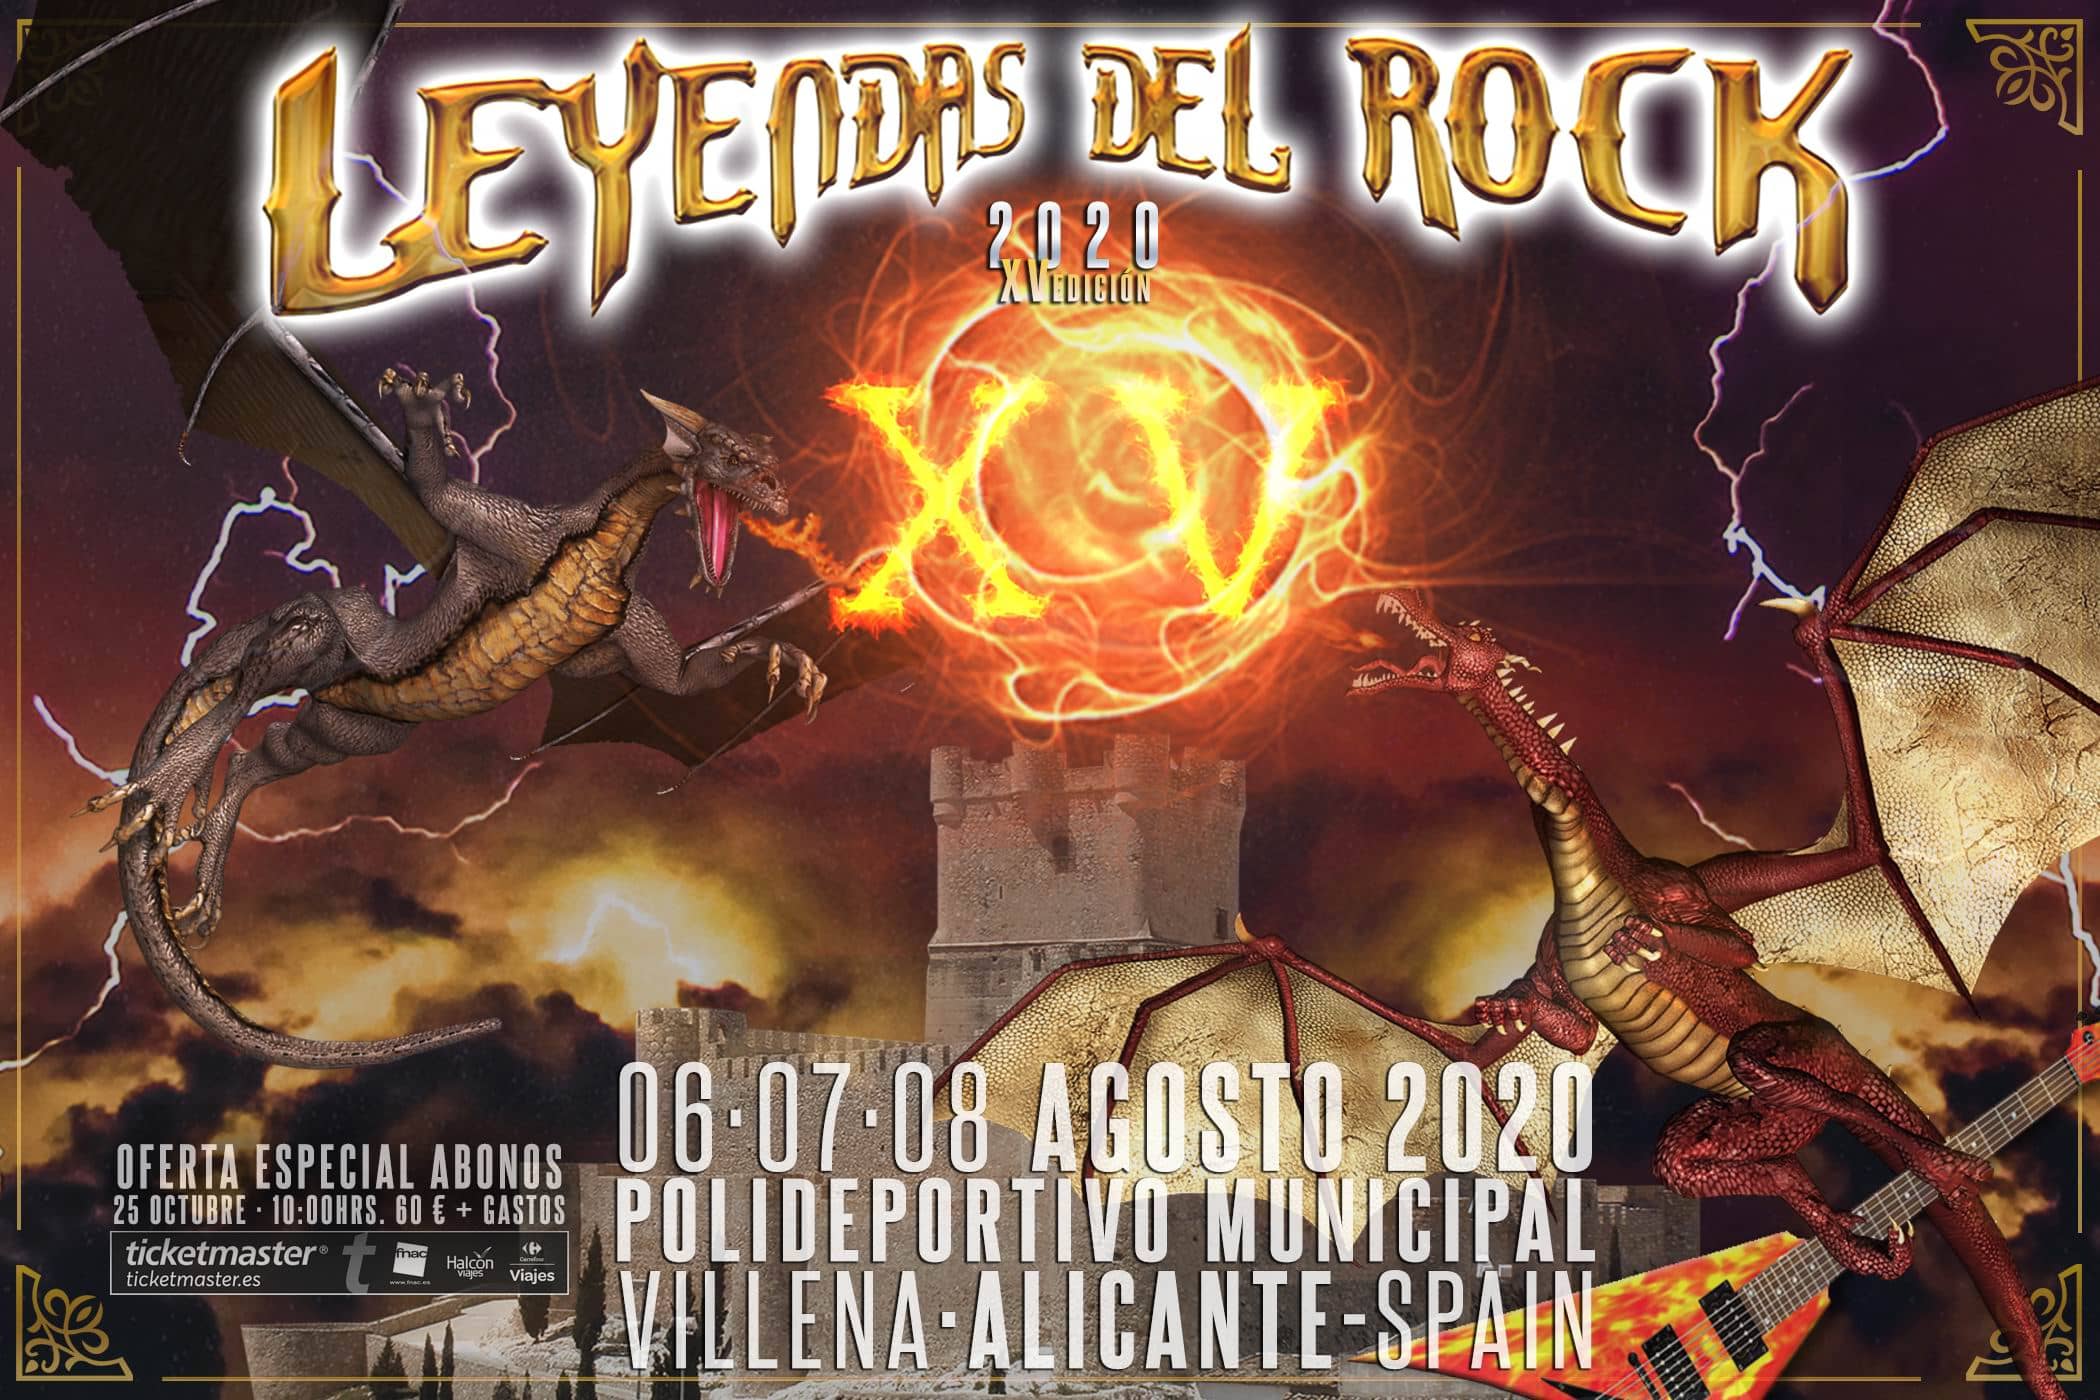 Leyendas del Rock 2020 se celebrará los días 6, 7 y 8 de agosto